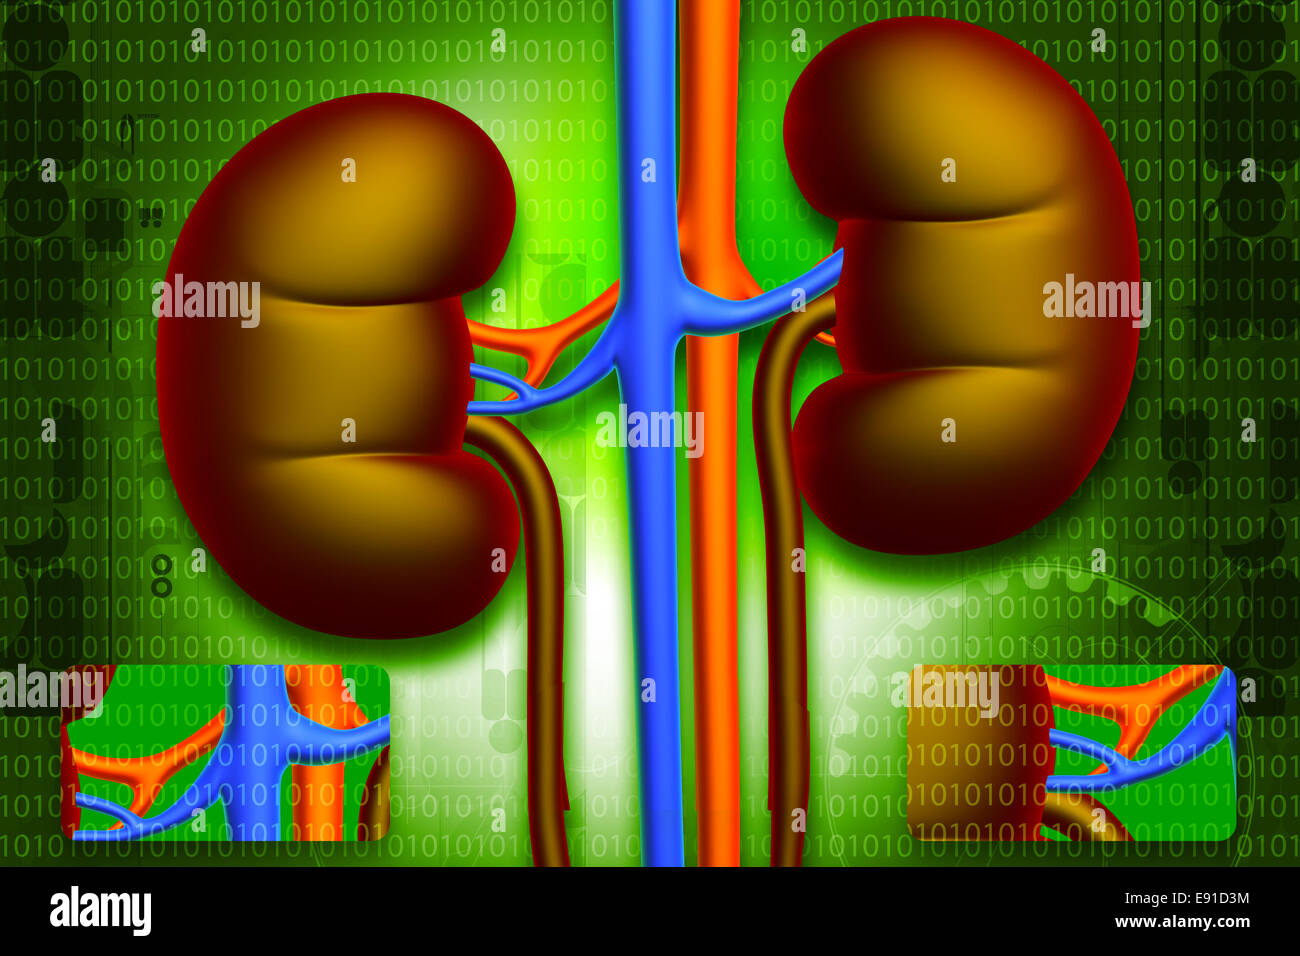 Human kidney Stock Photo